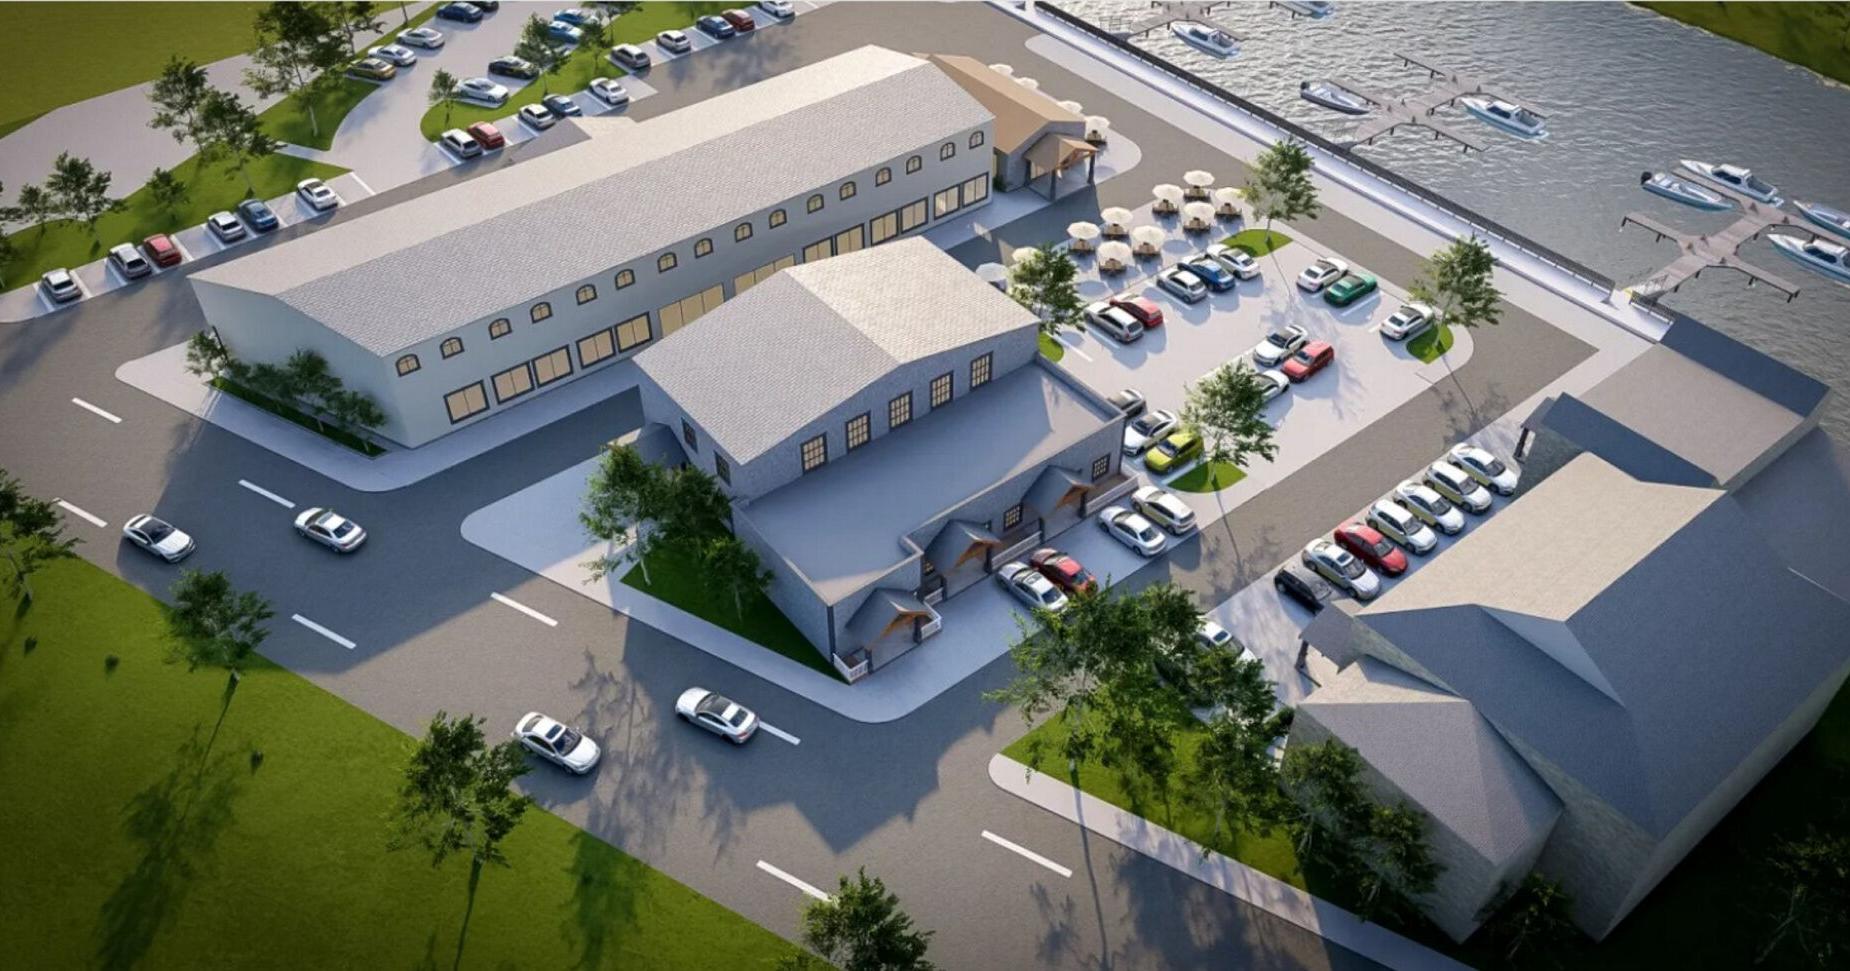 Plans revealed for former Ramada Inn along Ogdensburg waterfront